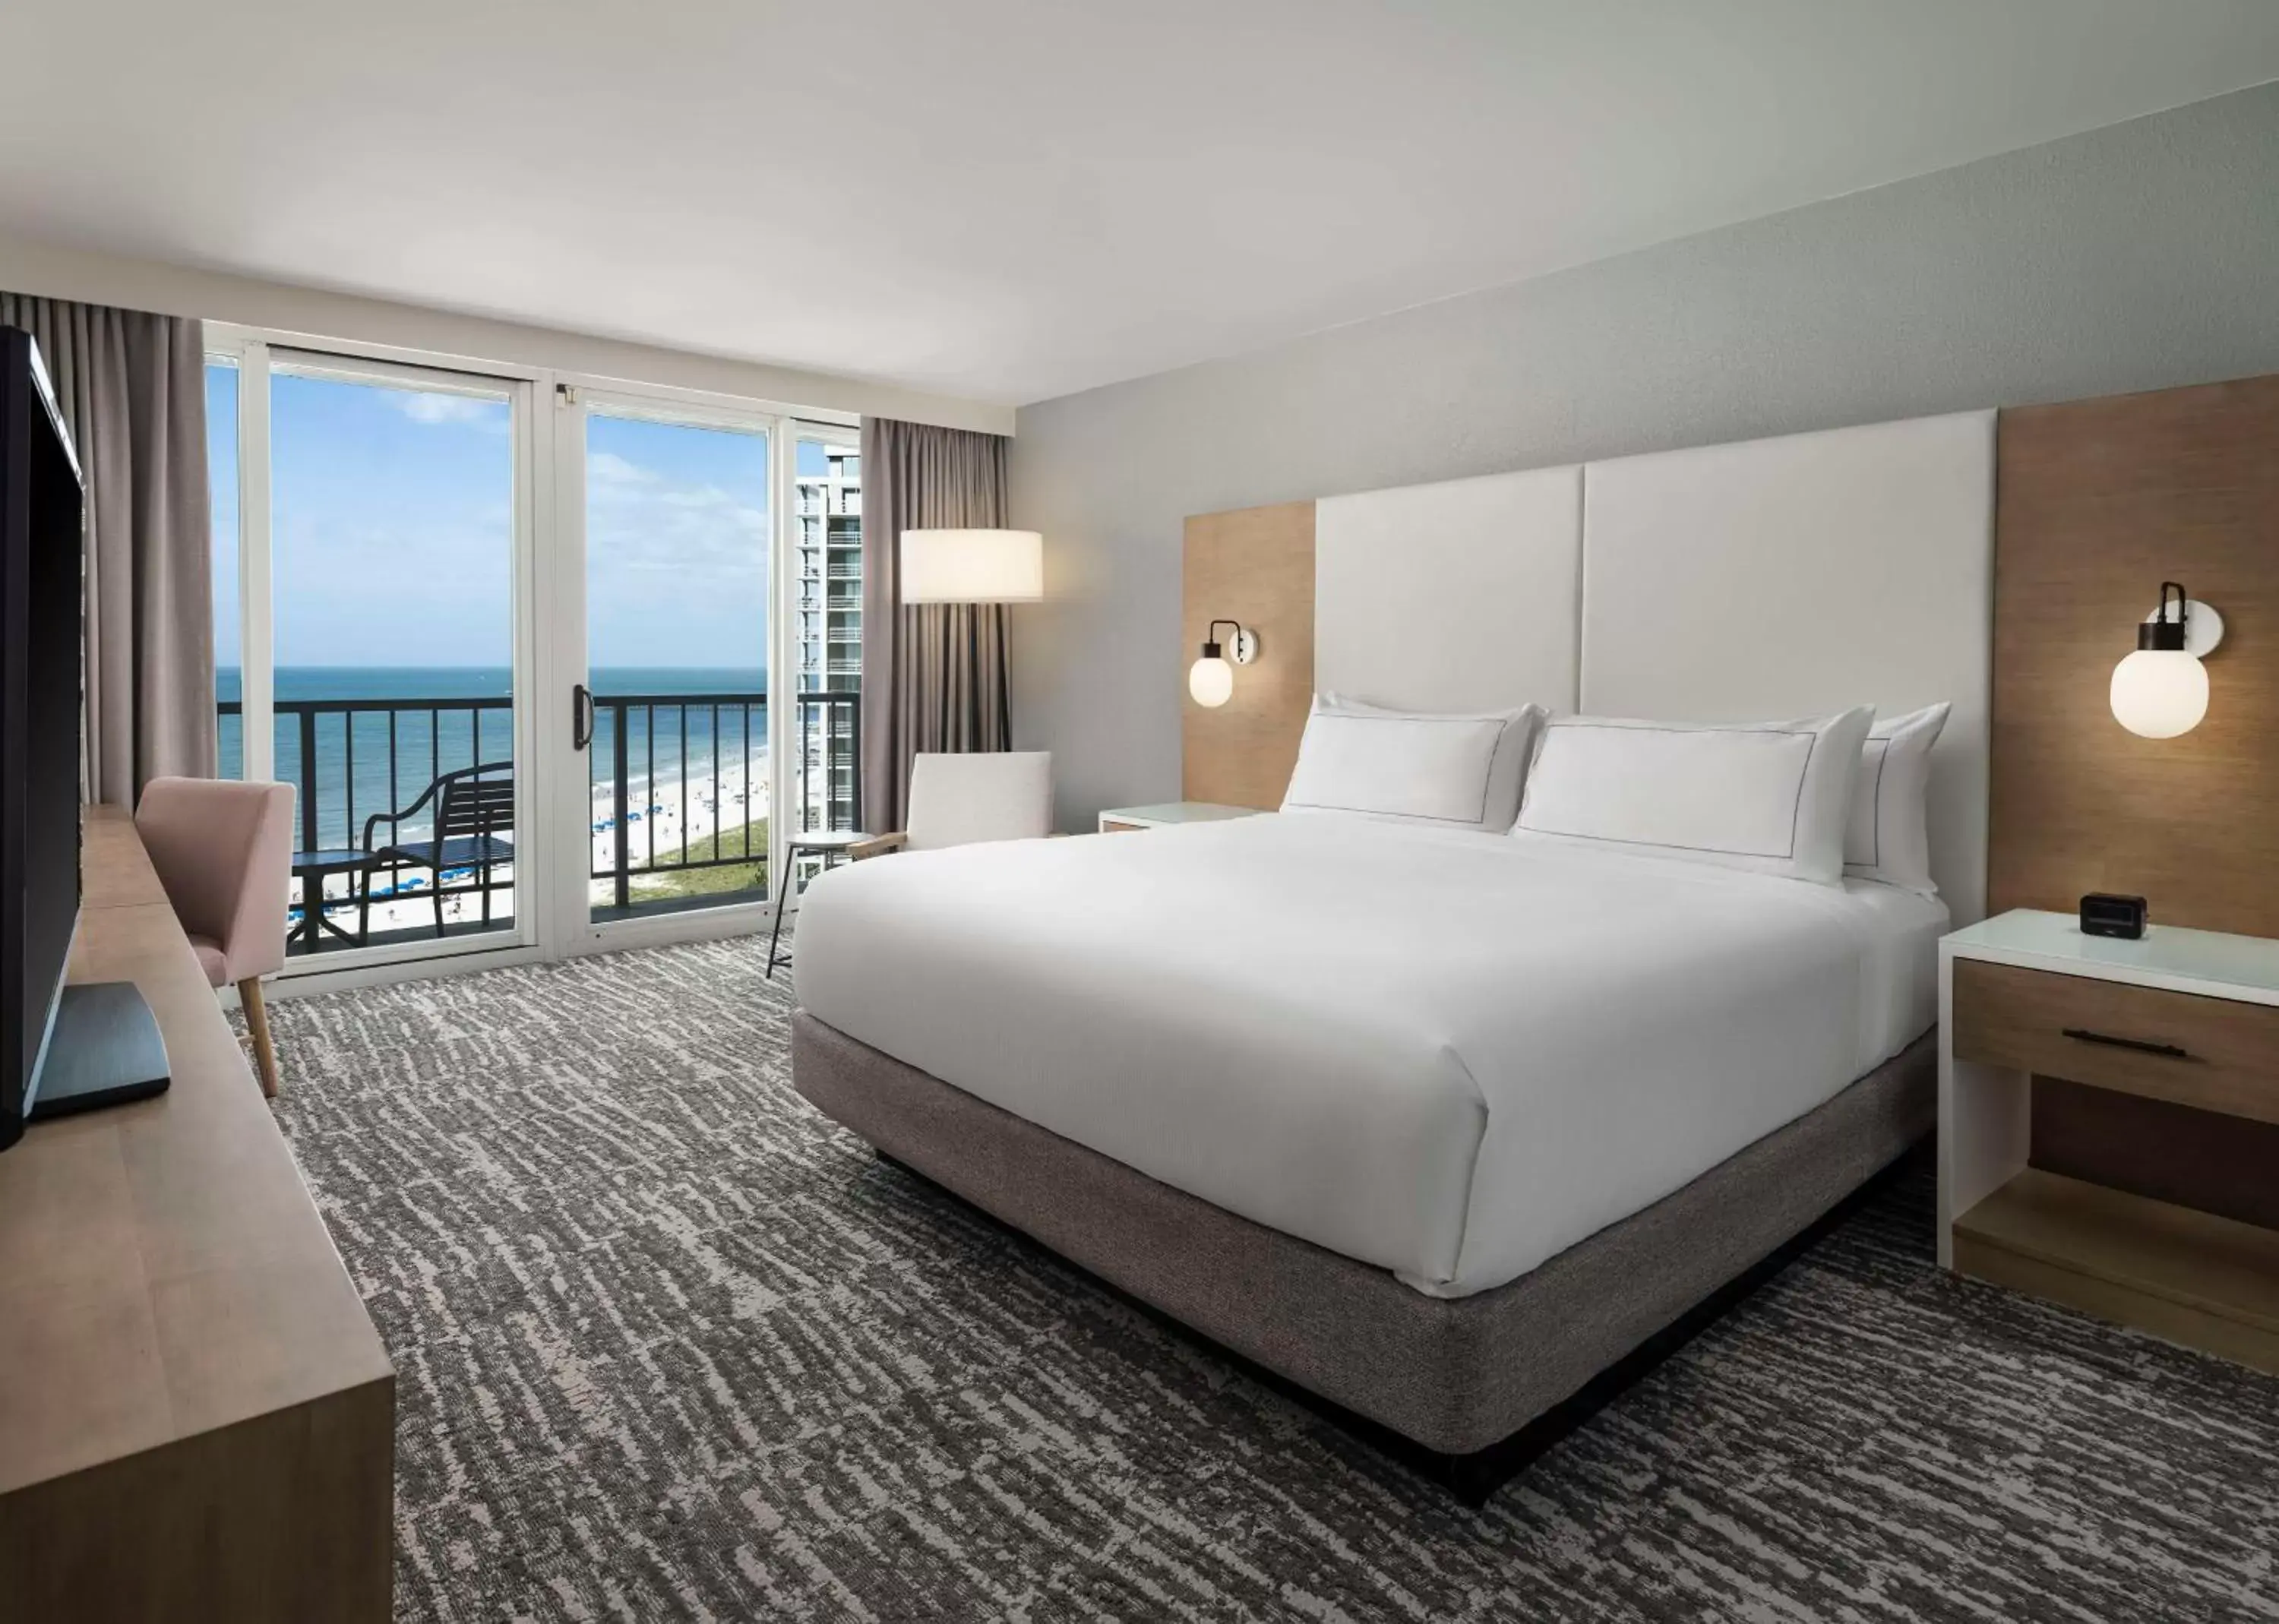 Bedroom in Hilton Myrtle Beach Resort